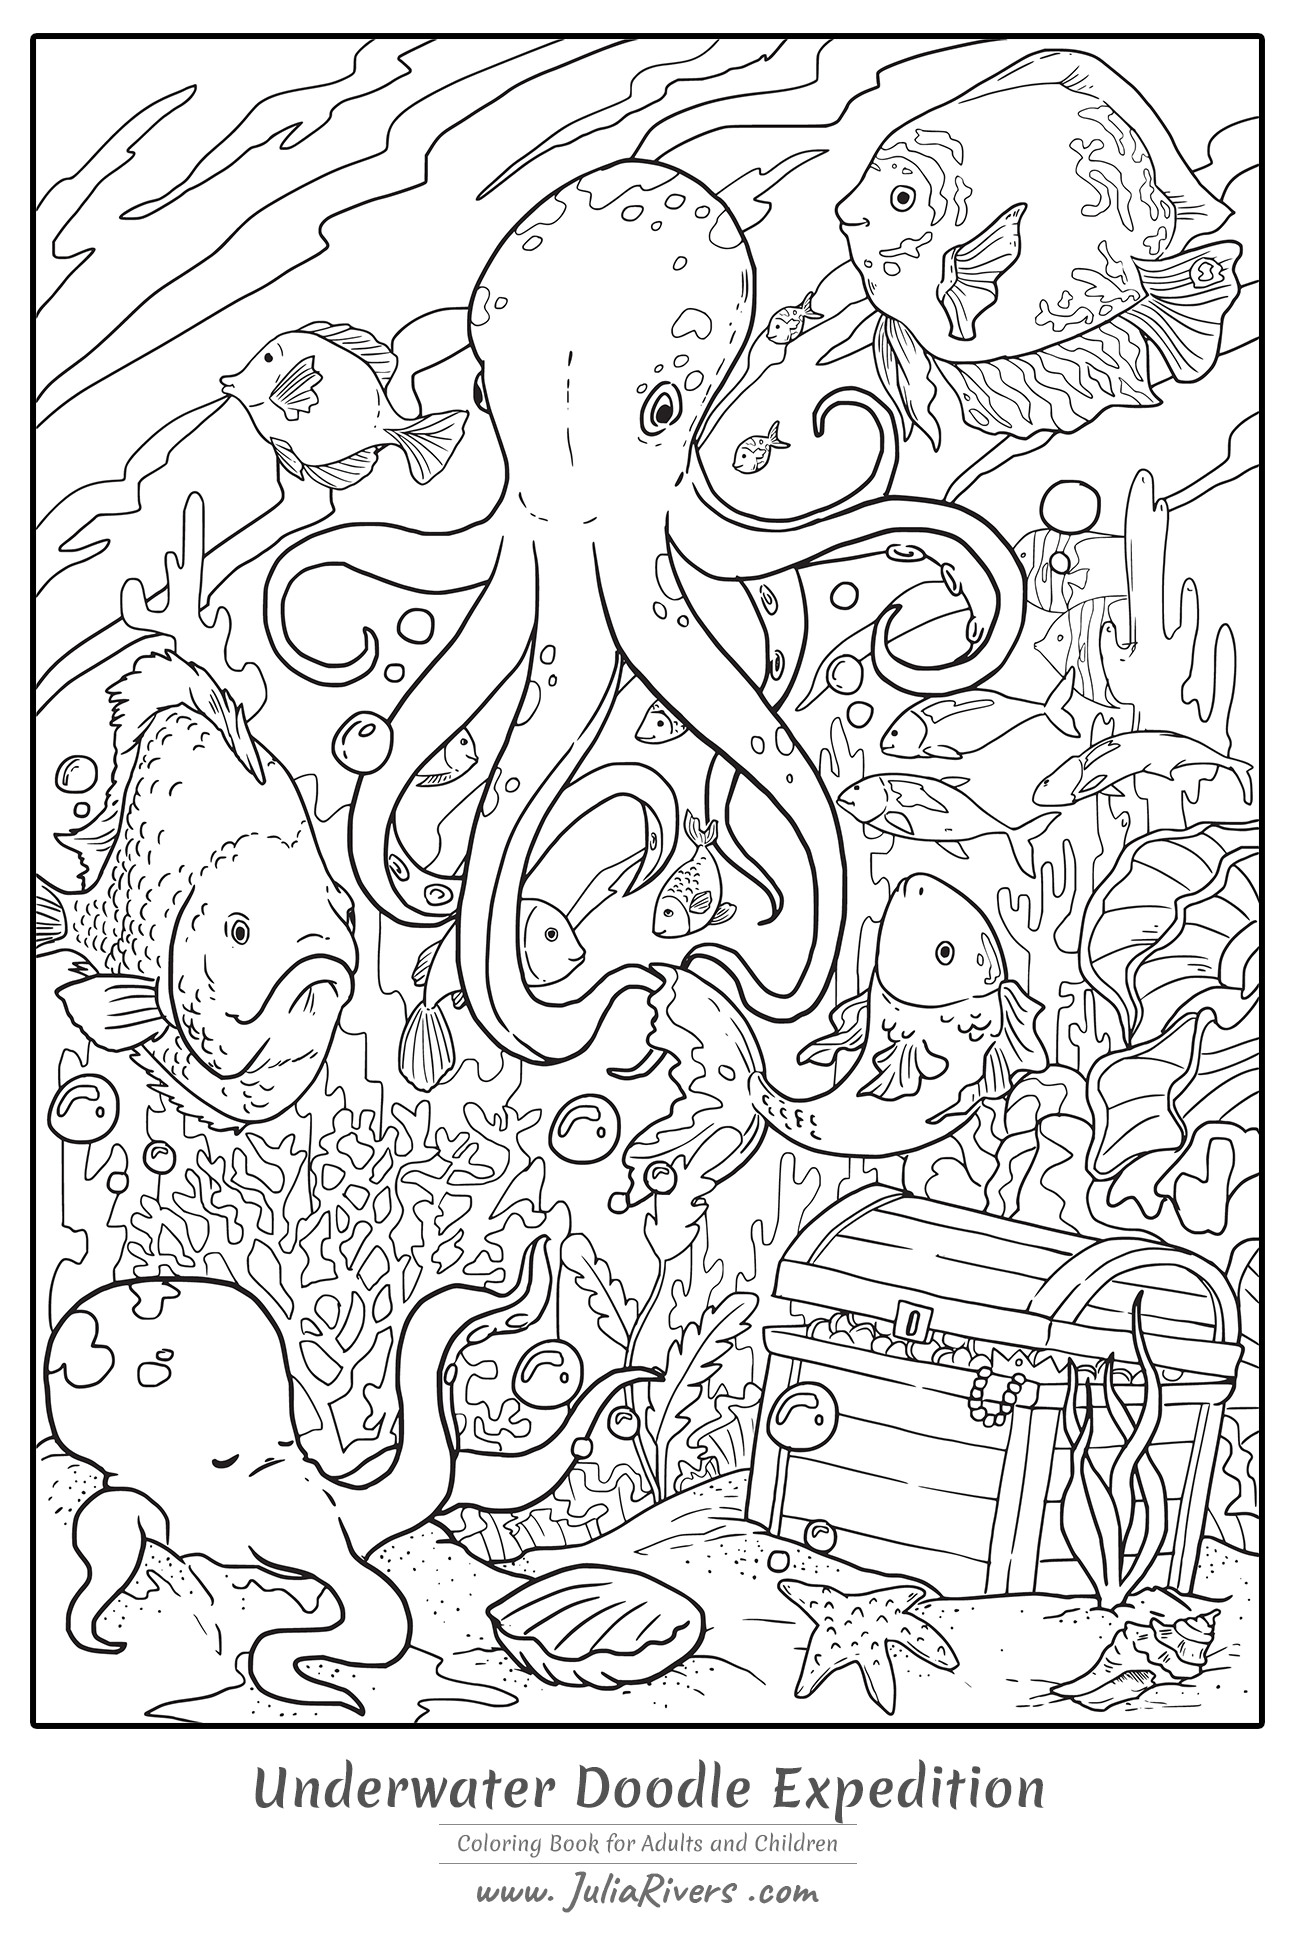 'Expedição subaquática Doodle' : Magnífica página para colorir representando um polvo gigante no fundo do mar, com peixes, corais e um tesouro misterioso, Artista : Julia Rivers